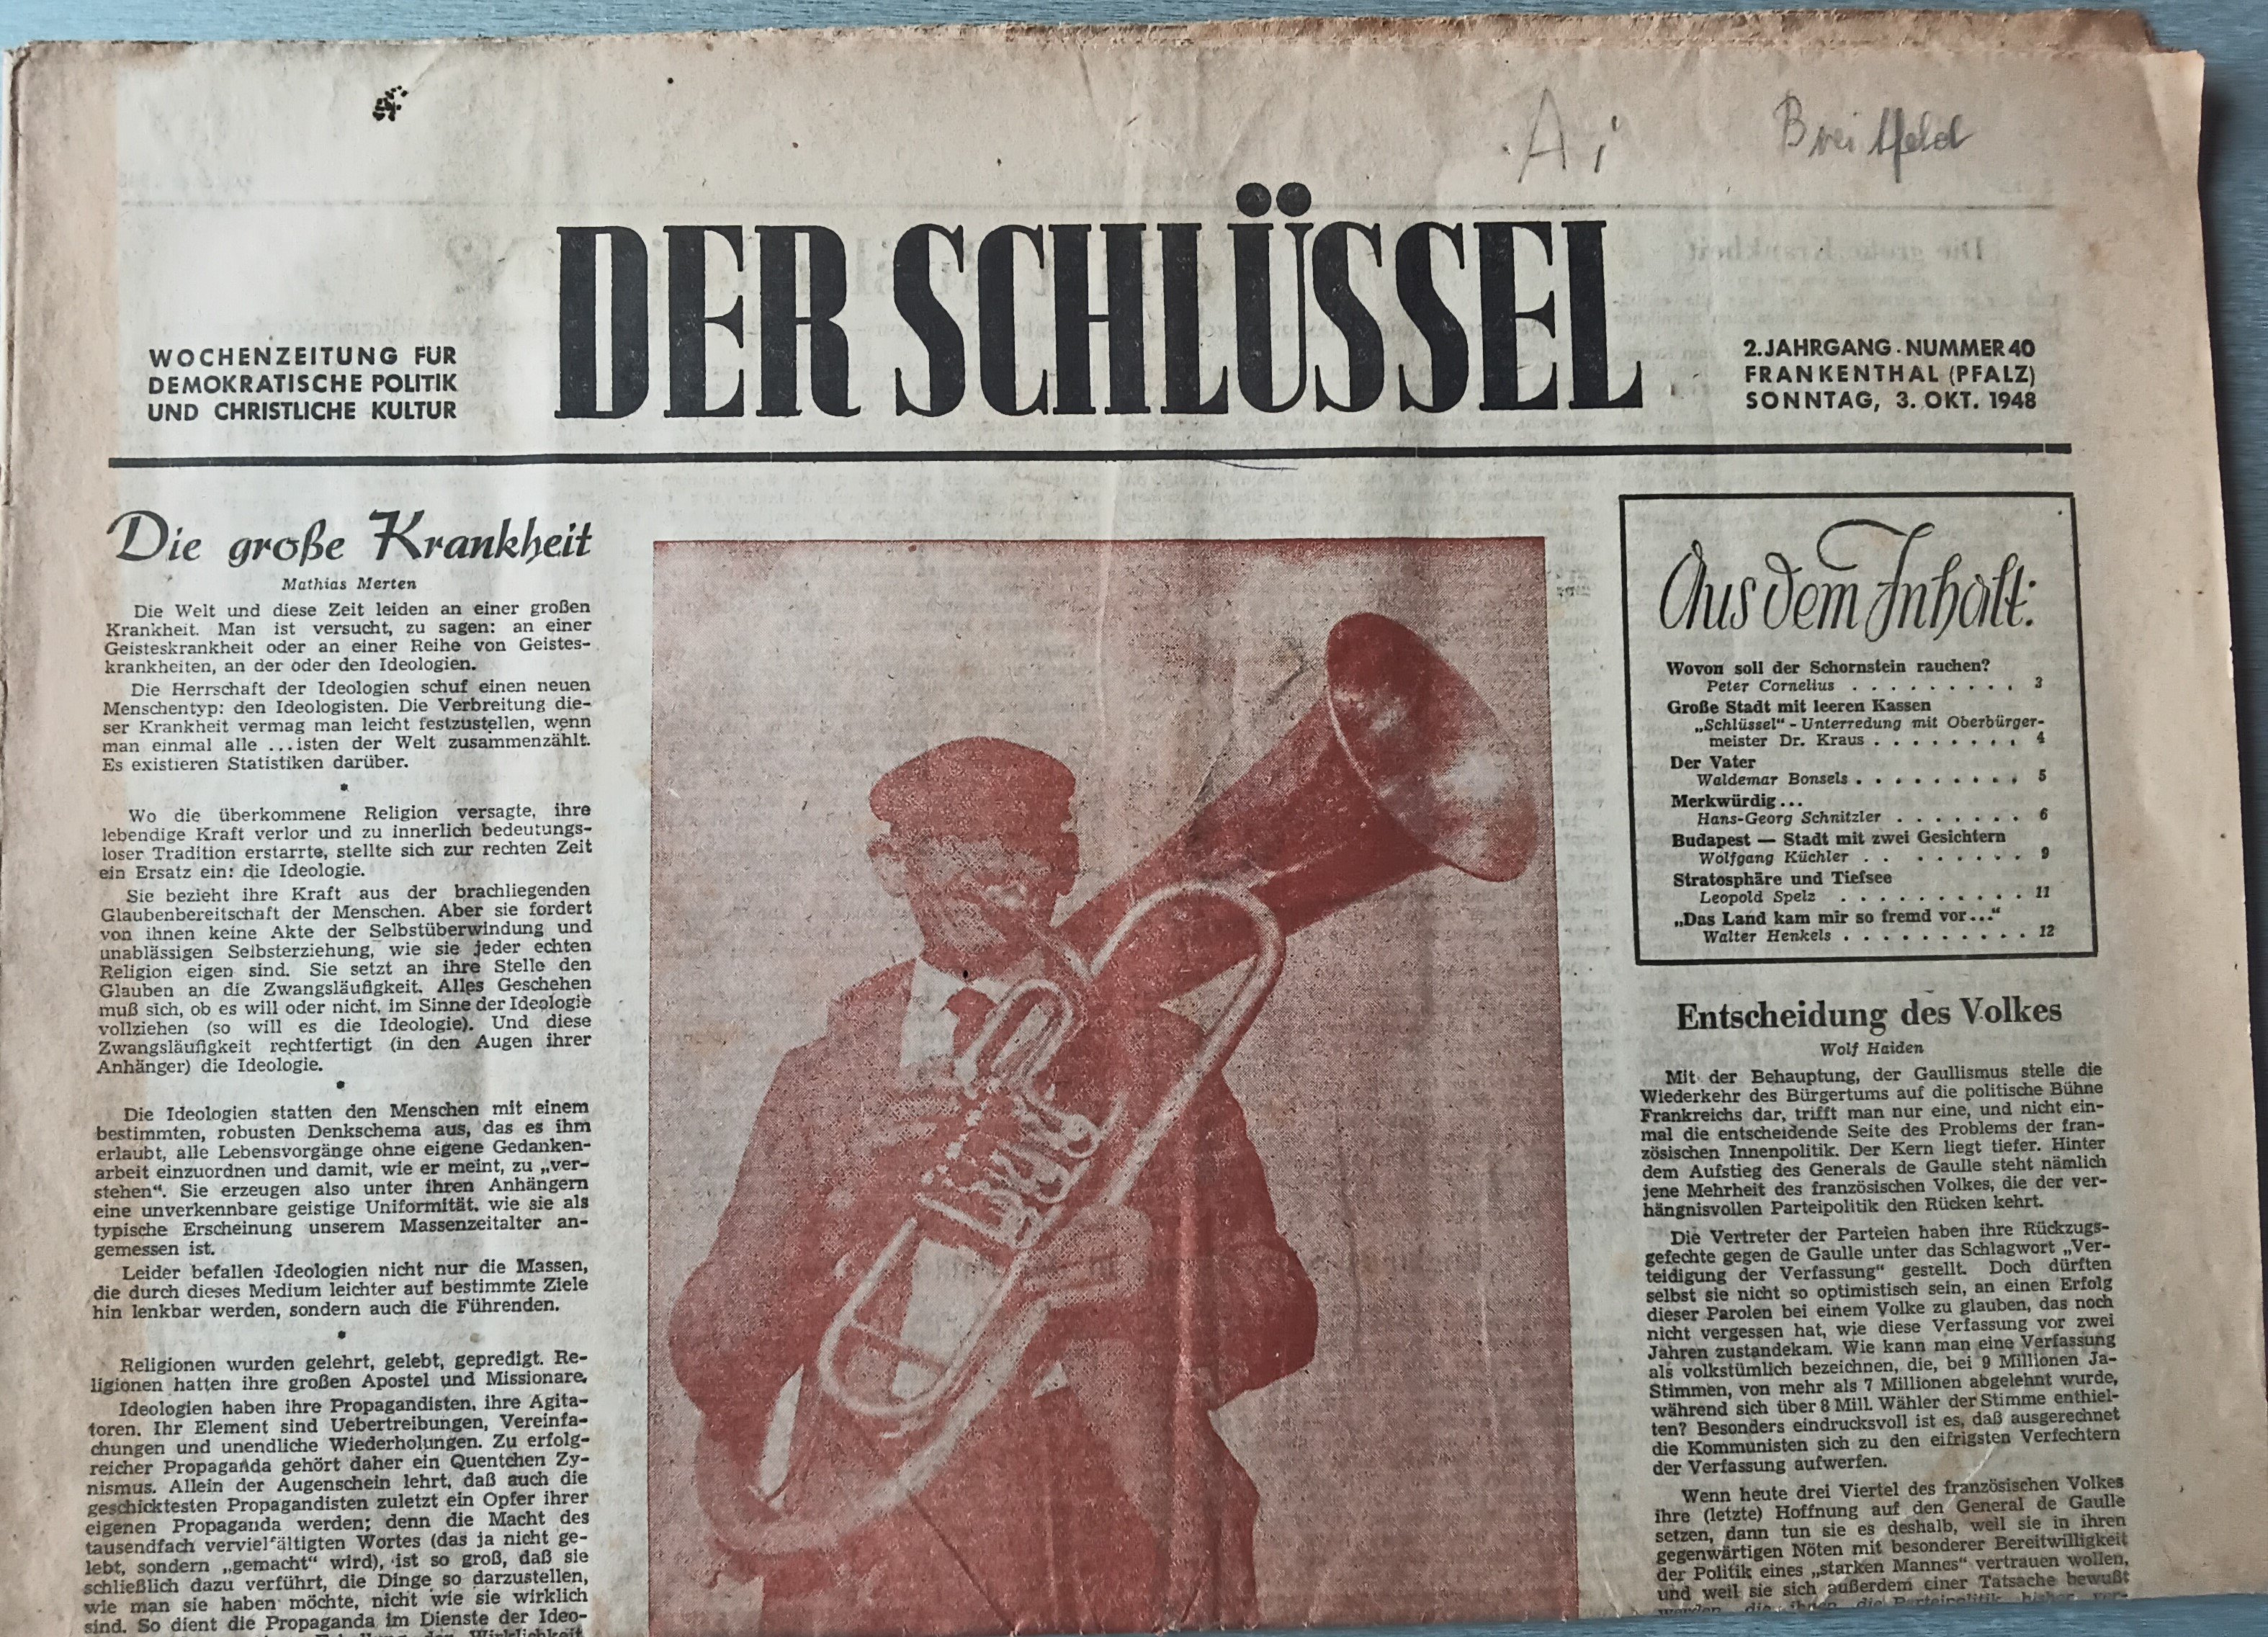 Zeitung Der Schlüssel 3.10.1948 (Heimatmuseum Aichstetten CC BY-NC-SA)